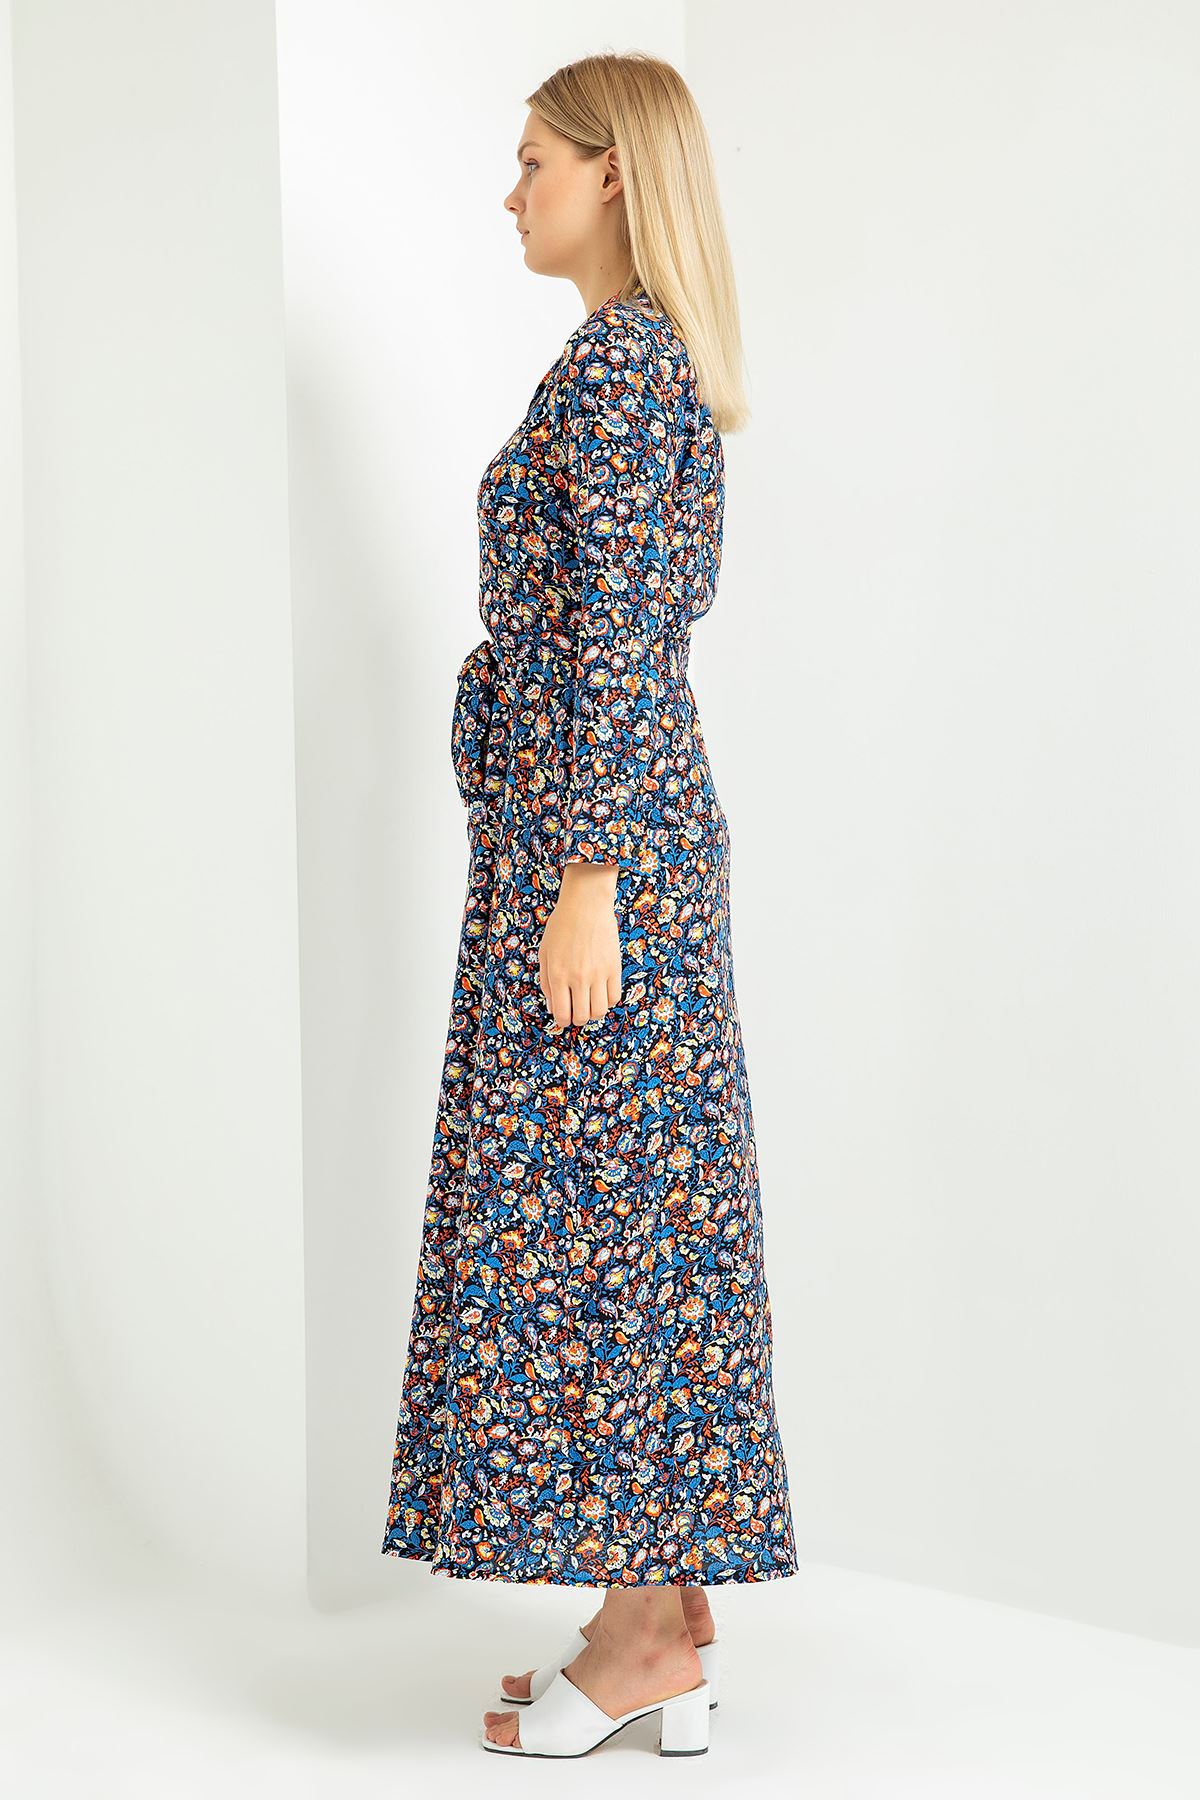 Viskon Empirme Kumaş Gömlek Yaka Yaprak Desenli Kadın Elbise-Lacivert